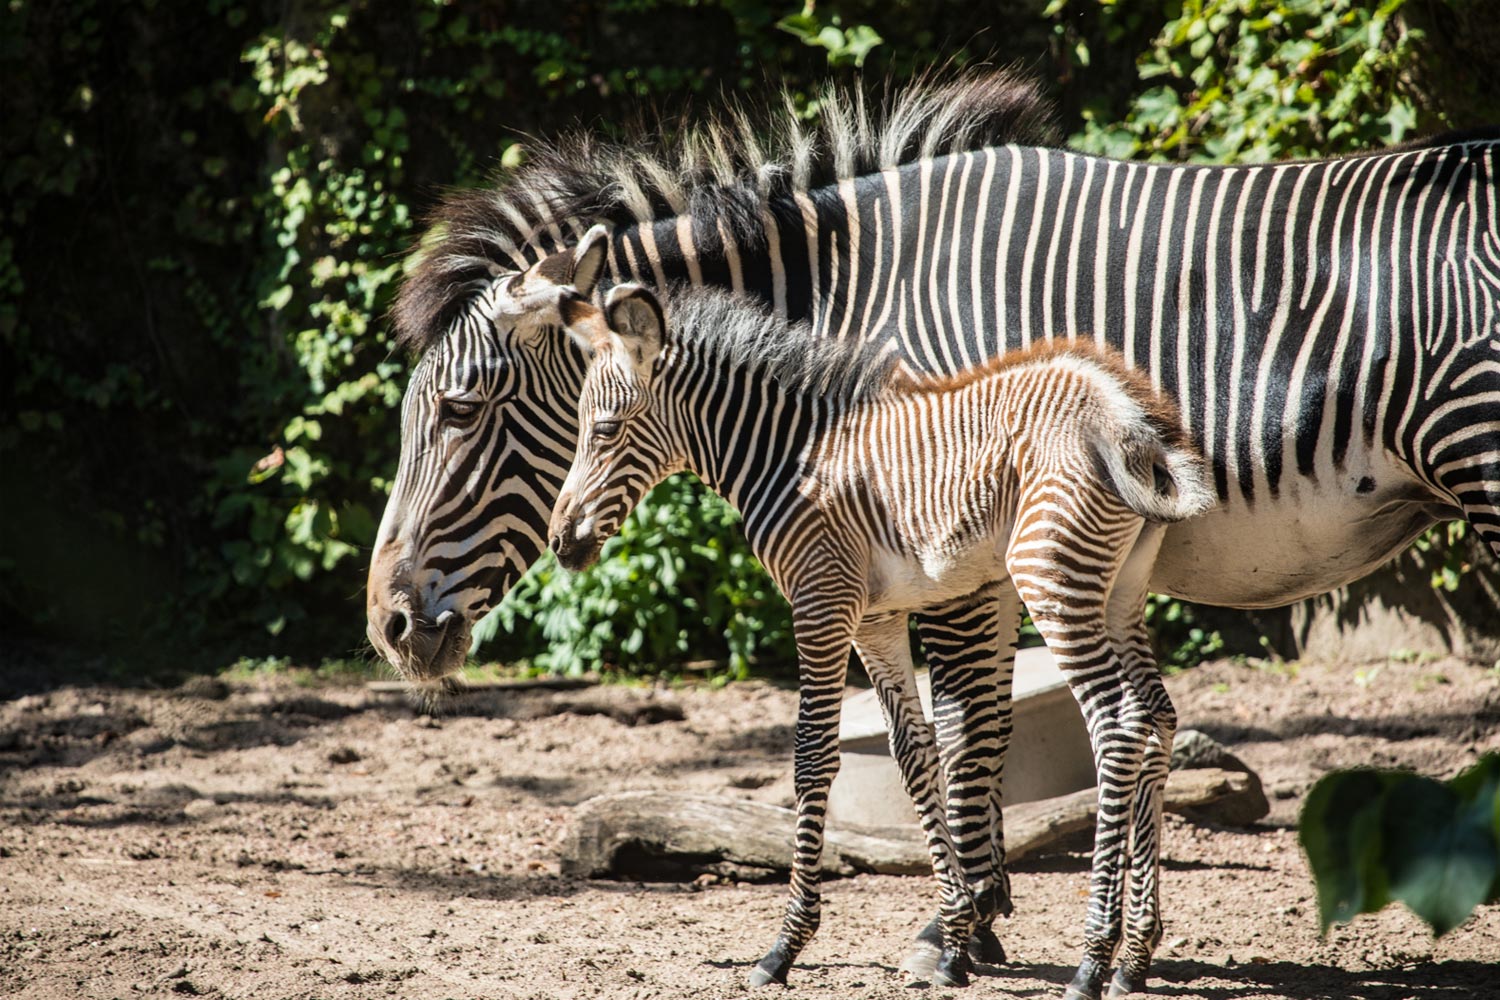 Zebra's in Lincoln Park Zoo in Chicago